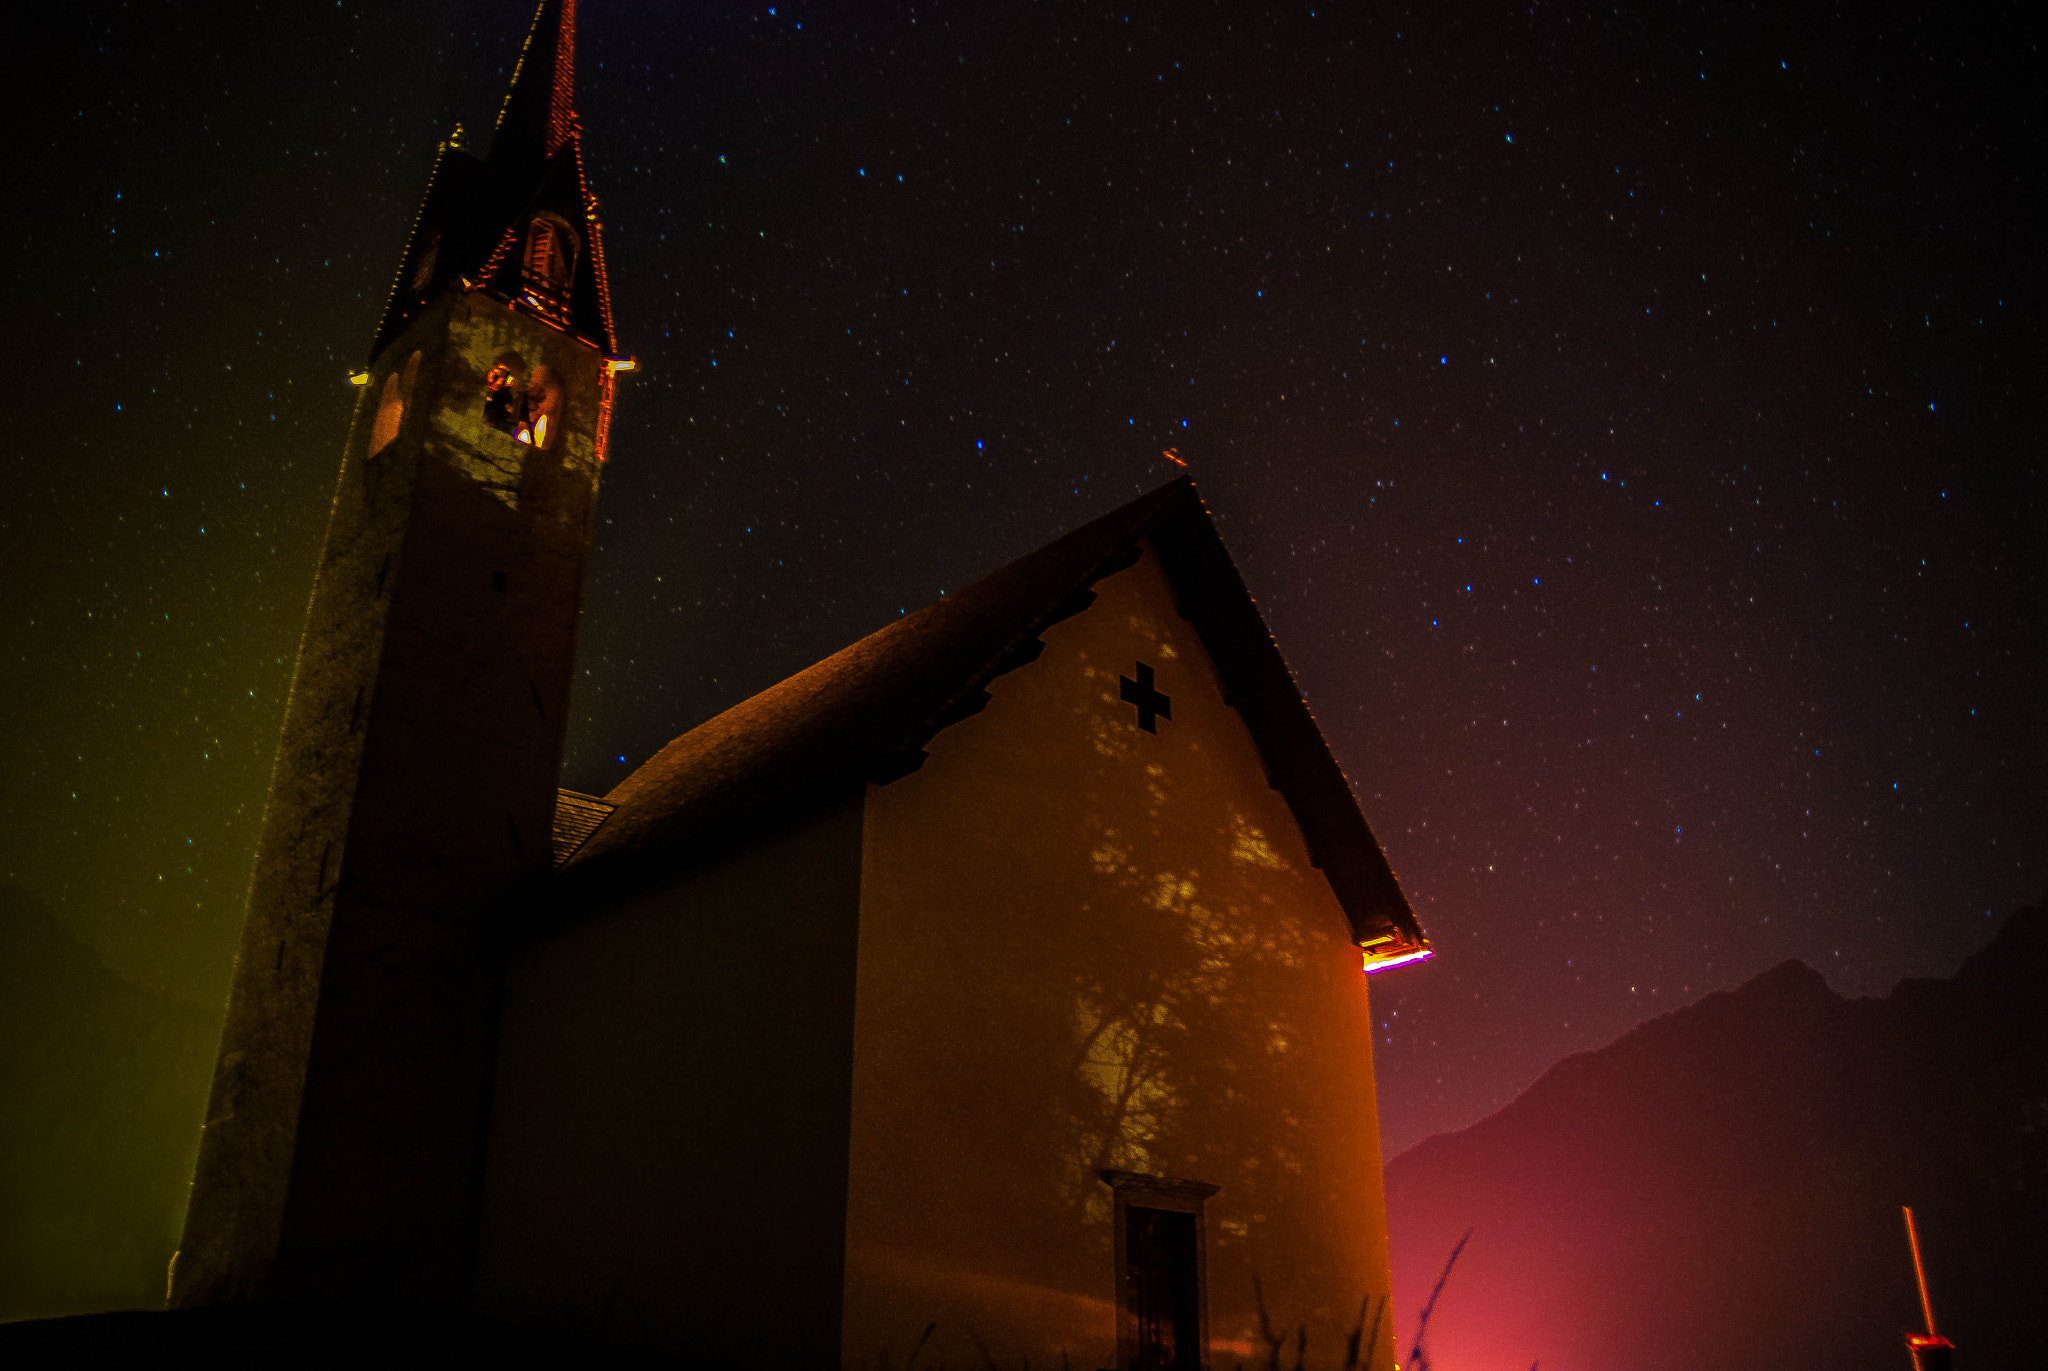 Nikon D200 sample photo. Church at night photography